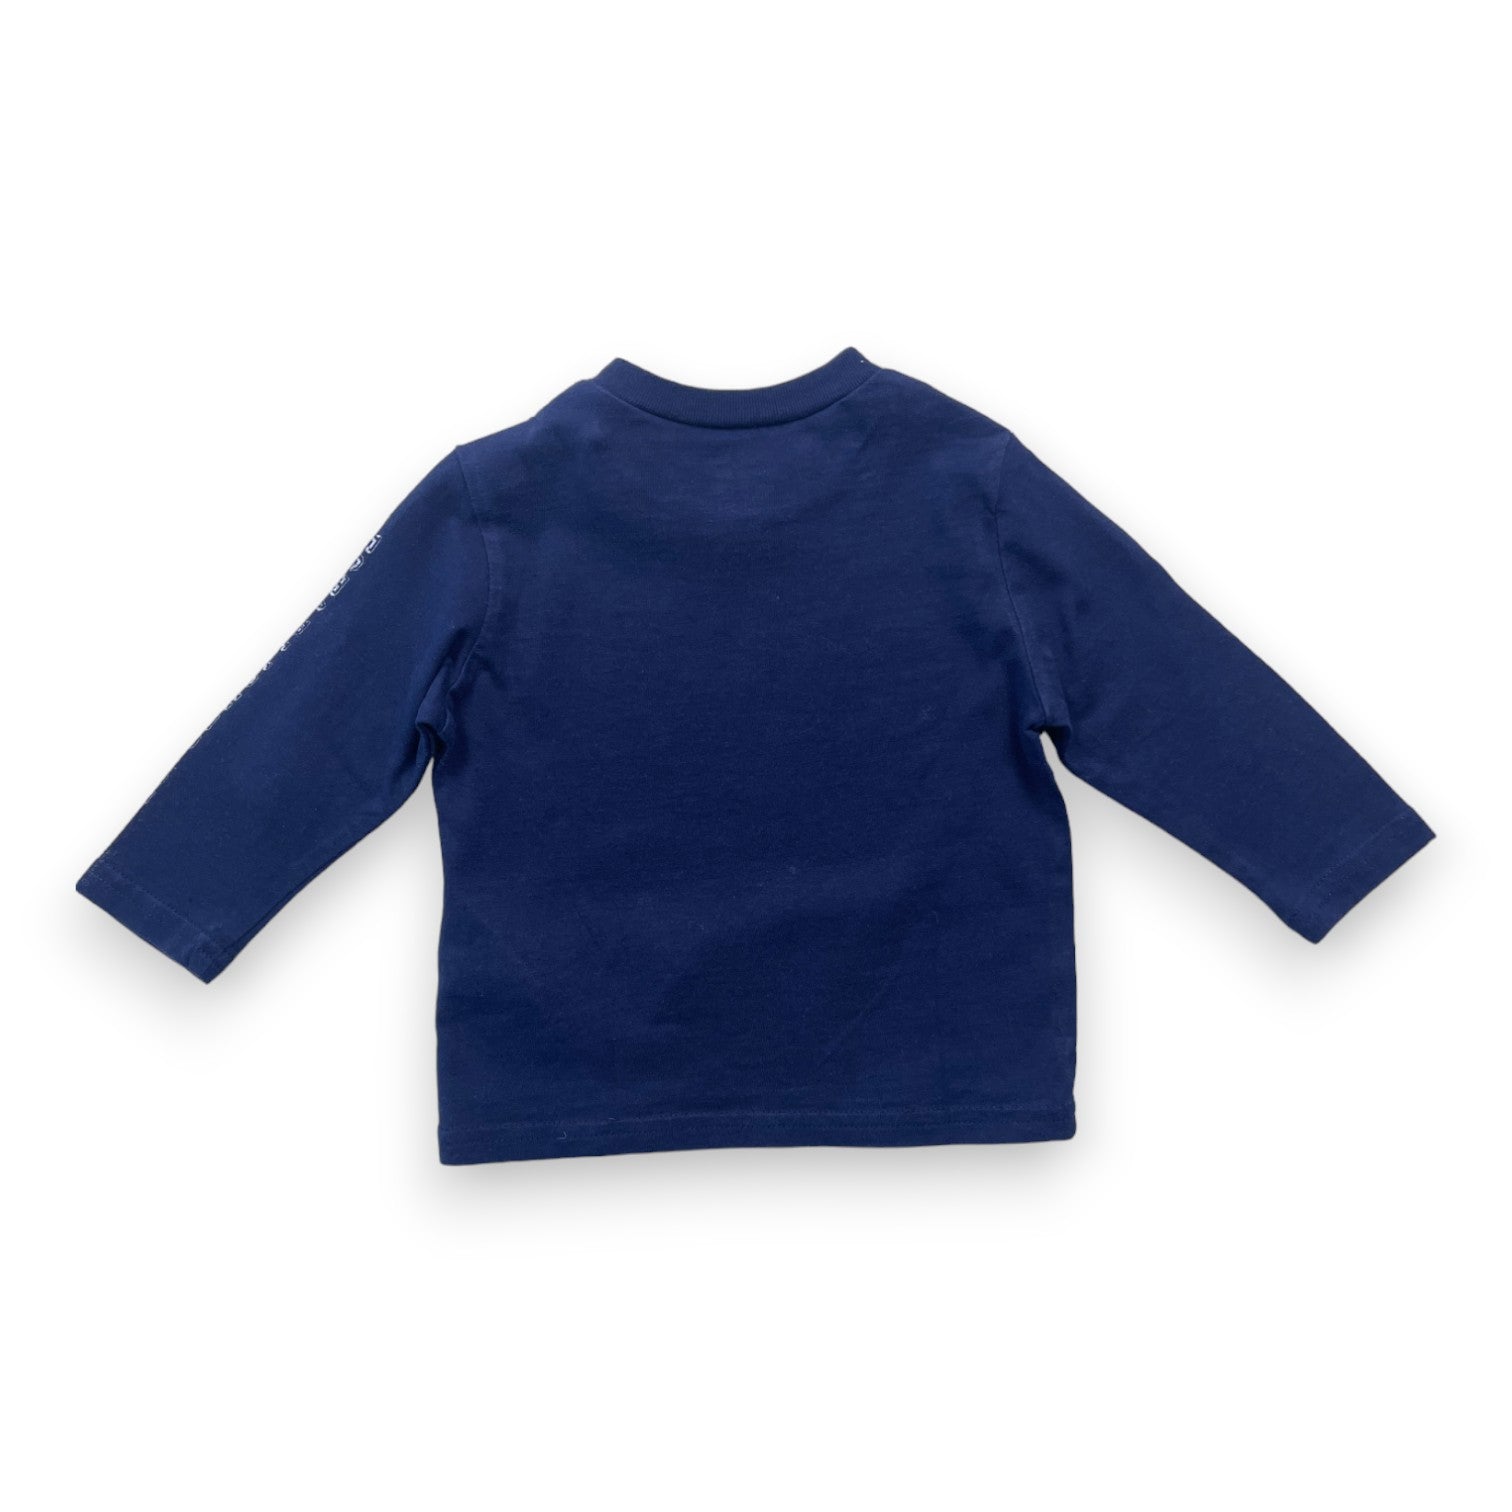 RALPH LAUREN - T shirt manches longues bleu marine à motifs - 9 mois